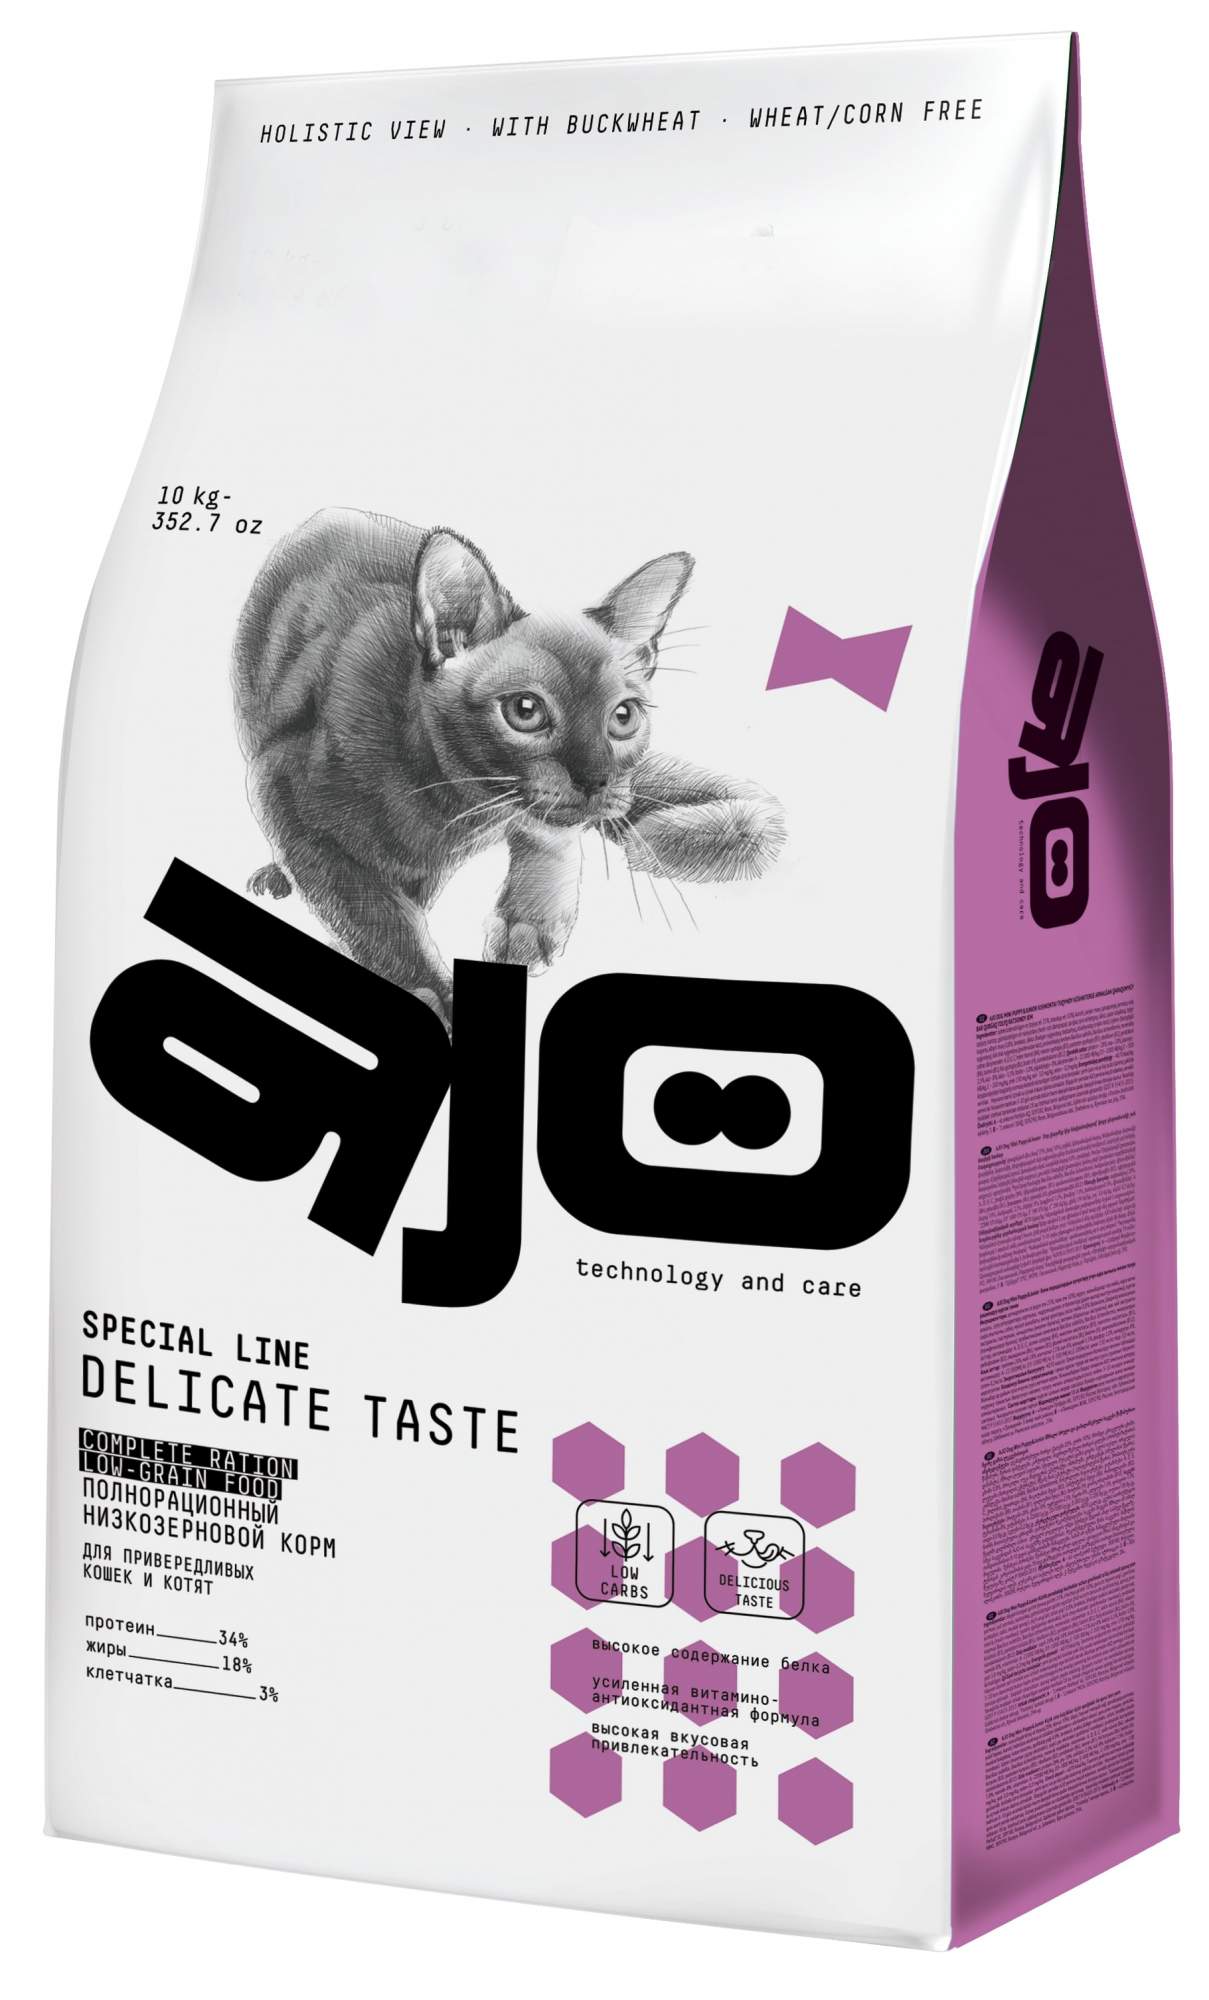 Сухой корм для кошек и котят AJO Cat Delicate Taste, для привередливых, 10 кг - купить в БубаМаркет, цена на Мегамаркет